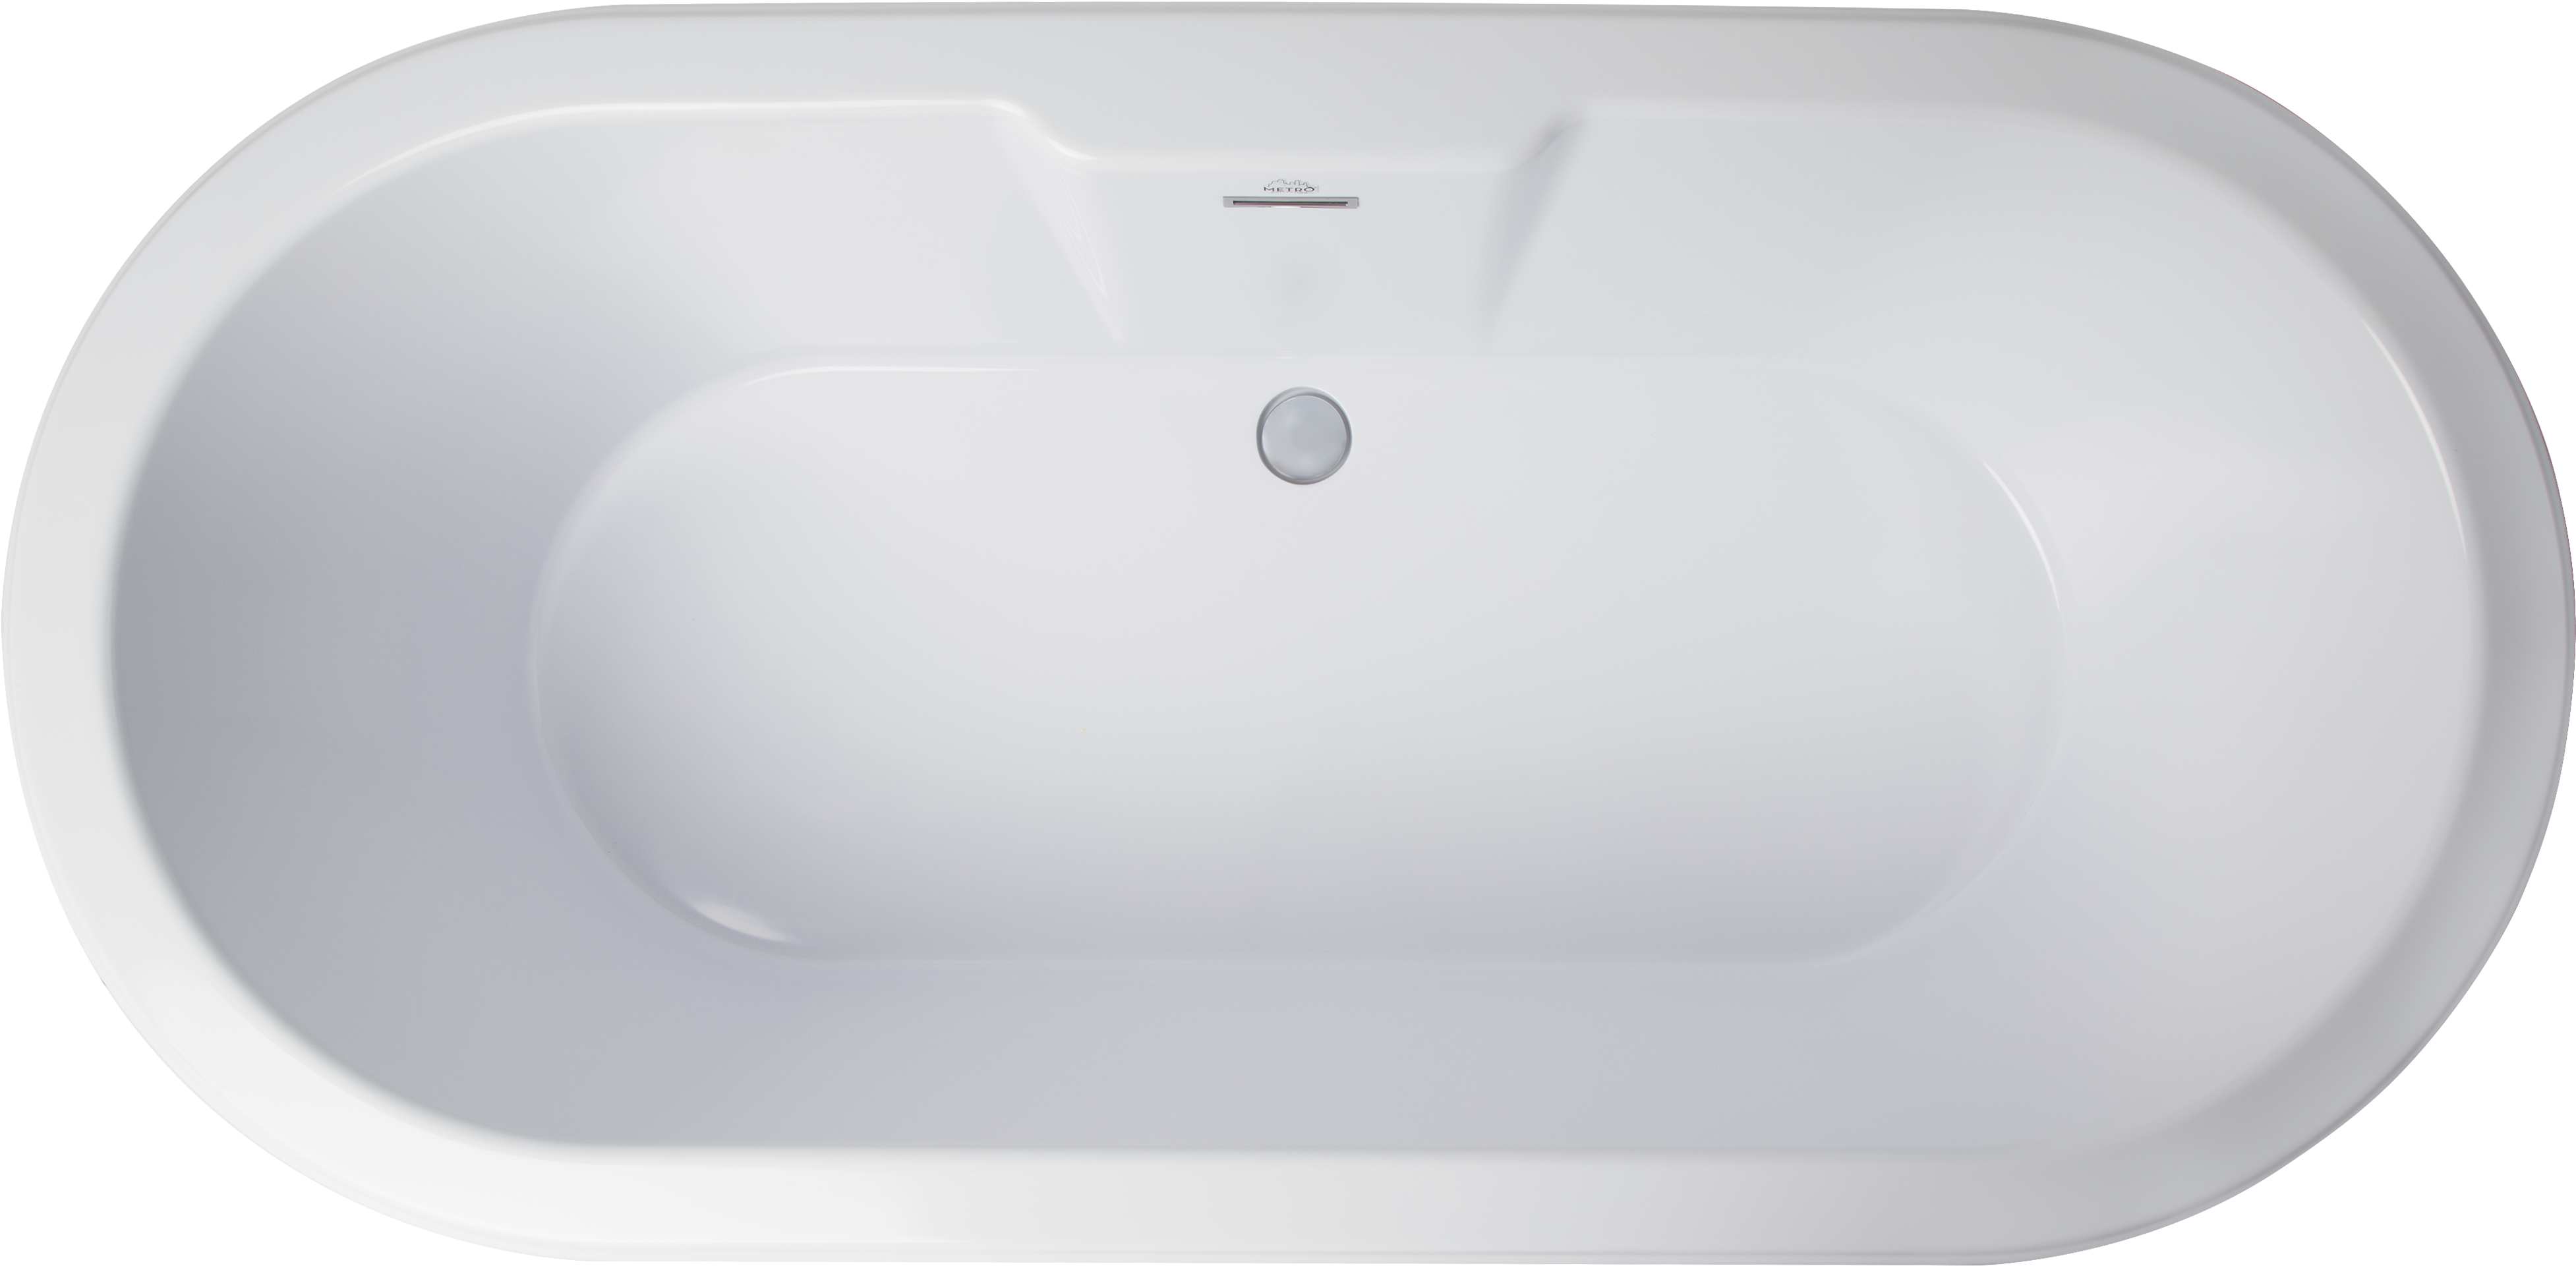 A White Bathtub With A Drain